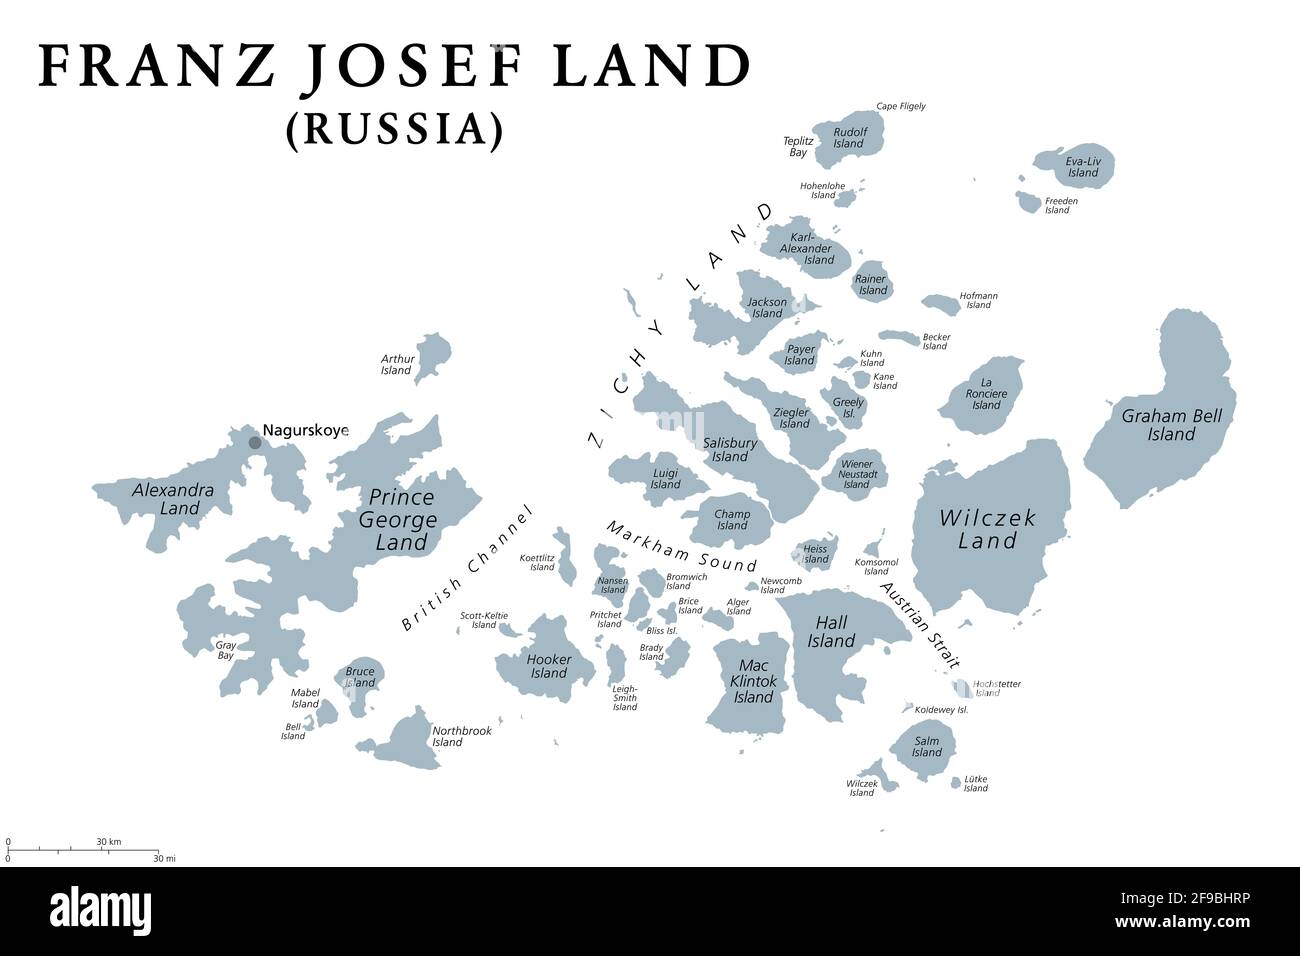 Franz Josef Land, graue politische Landkarte. Russische Inselgruppe im Arktischen Ozean, nördlichster Teil des Archangelsk-Gebiets. Stockfoto